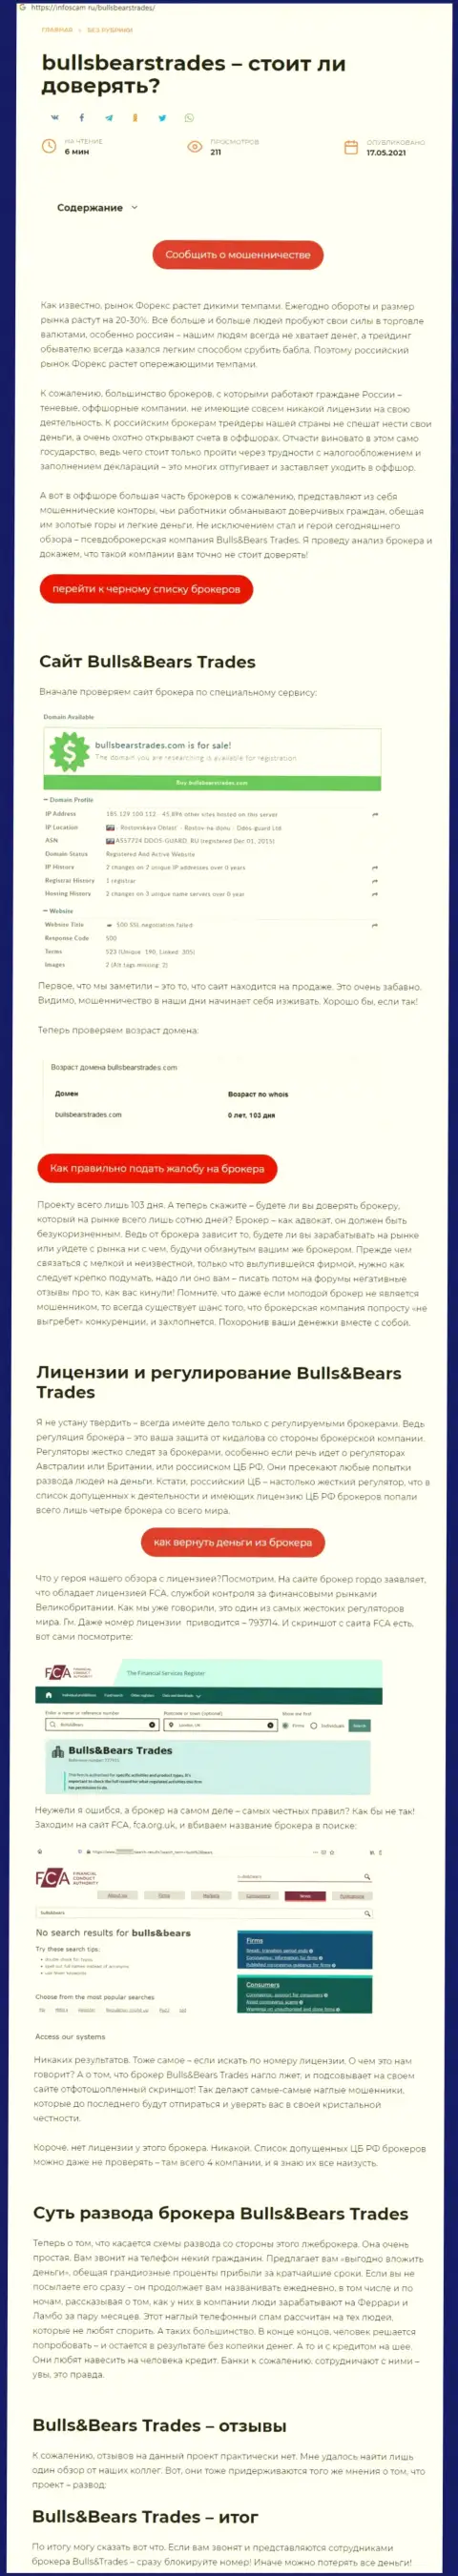 Bulls Bears Trades - это РАЗВОДИЛА !!! Схемы облапошивания (обзор)